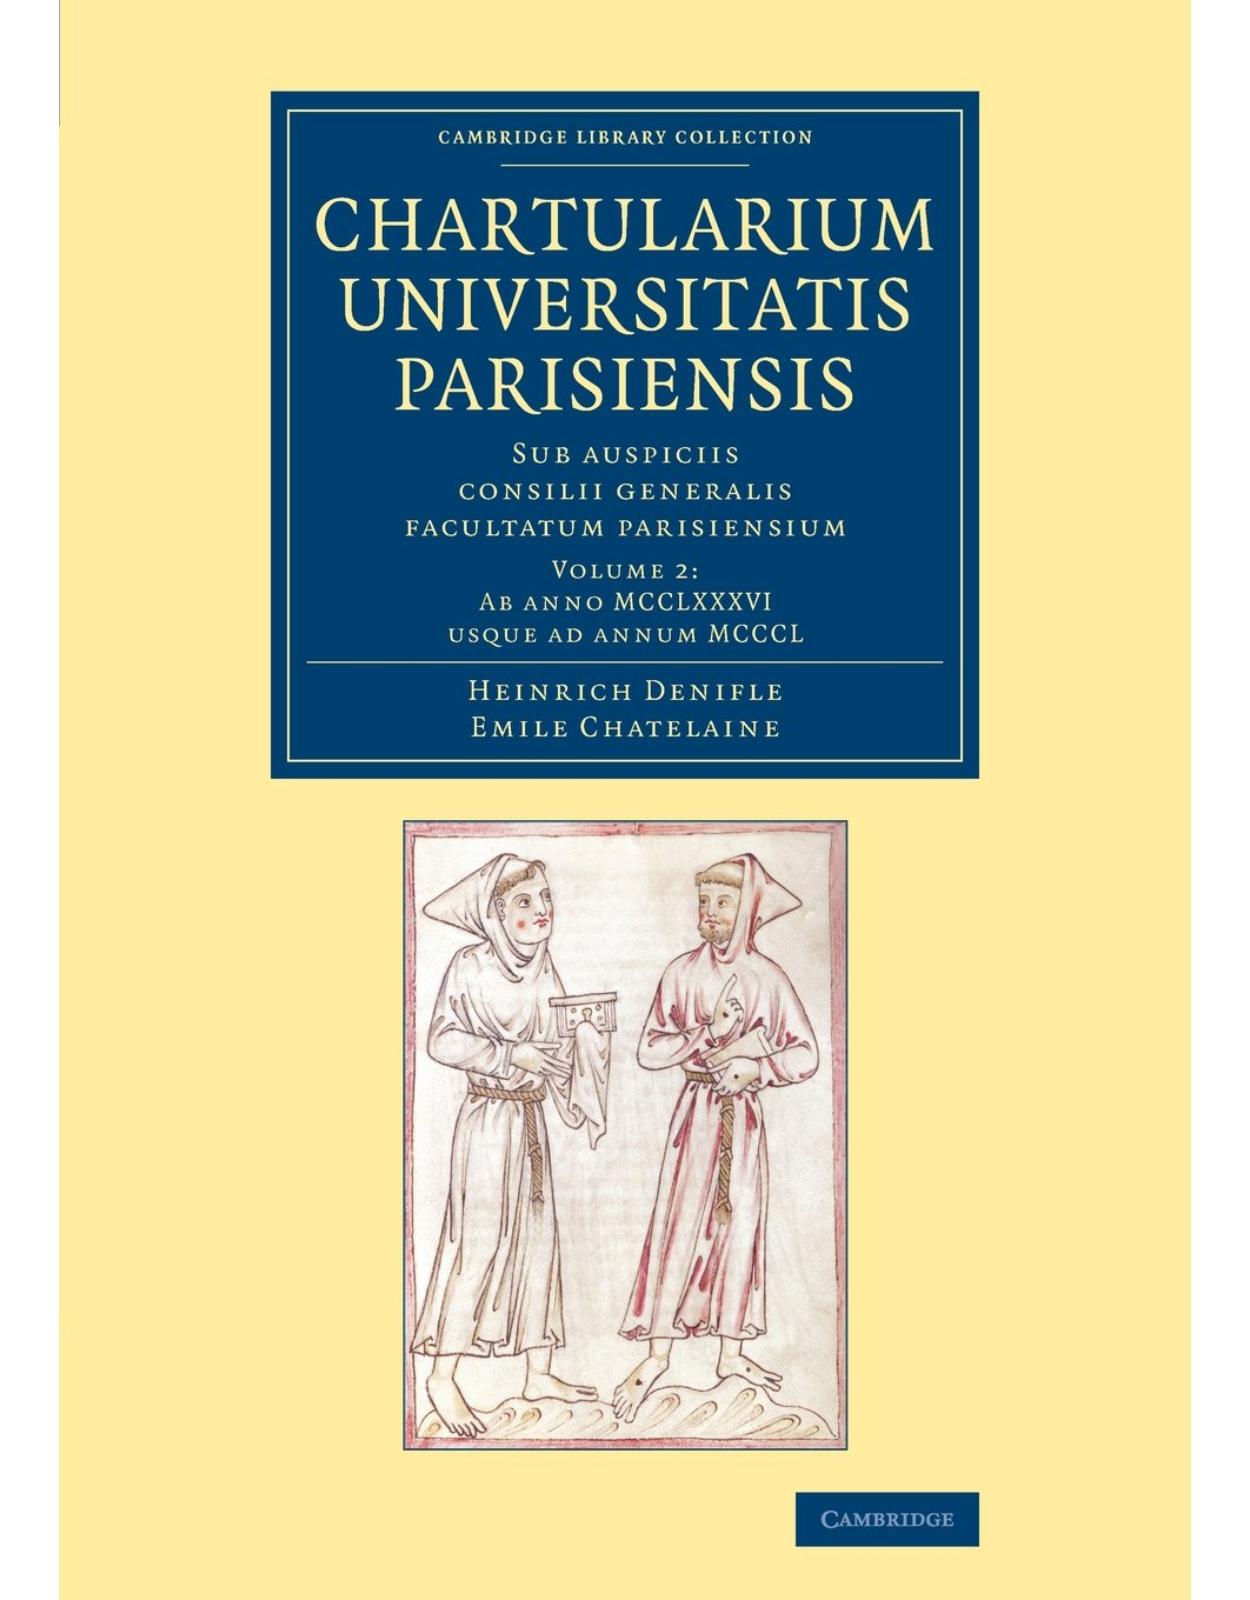 Chartularium Universitatis Parisiensis: Volume 2, Ab anno MCCLXXXVI usque ad annum MCCCL: Sub auspiciis consilii generalis facultatum parisiensium (Cambridge Library Collection - Medieval History) (Latin)